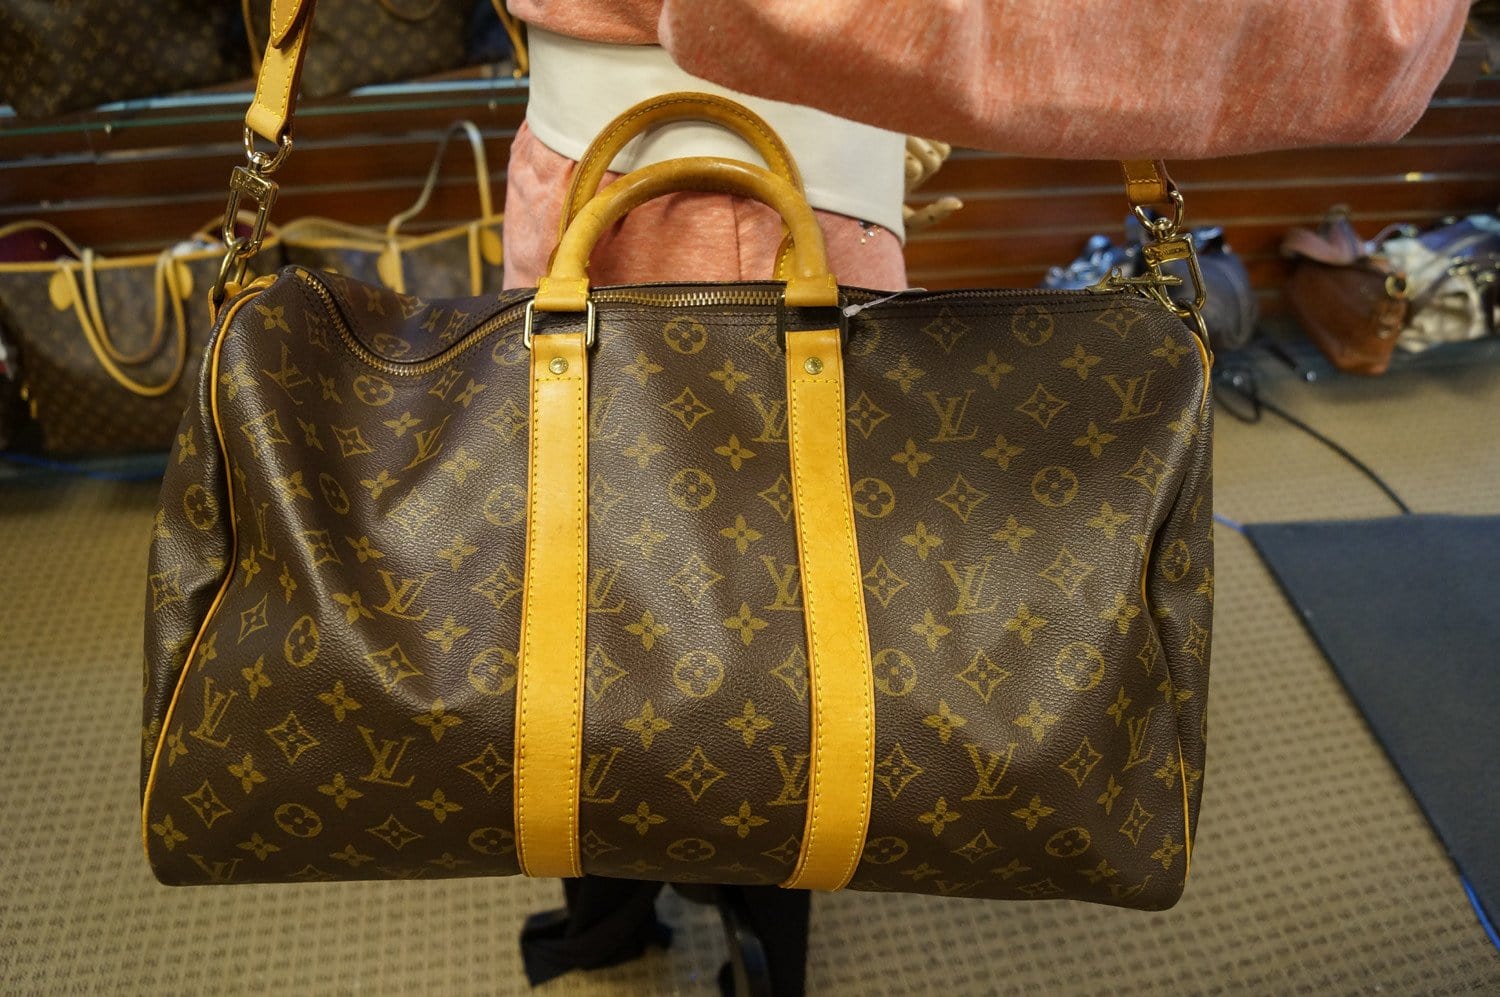 ❤️TOUR - Louis Vuitton Keepall 45, 50, 55 & 60 Size Comparison 